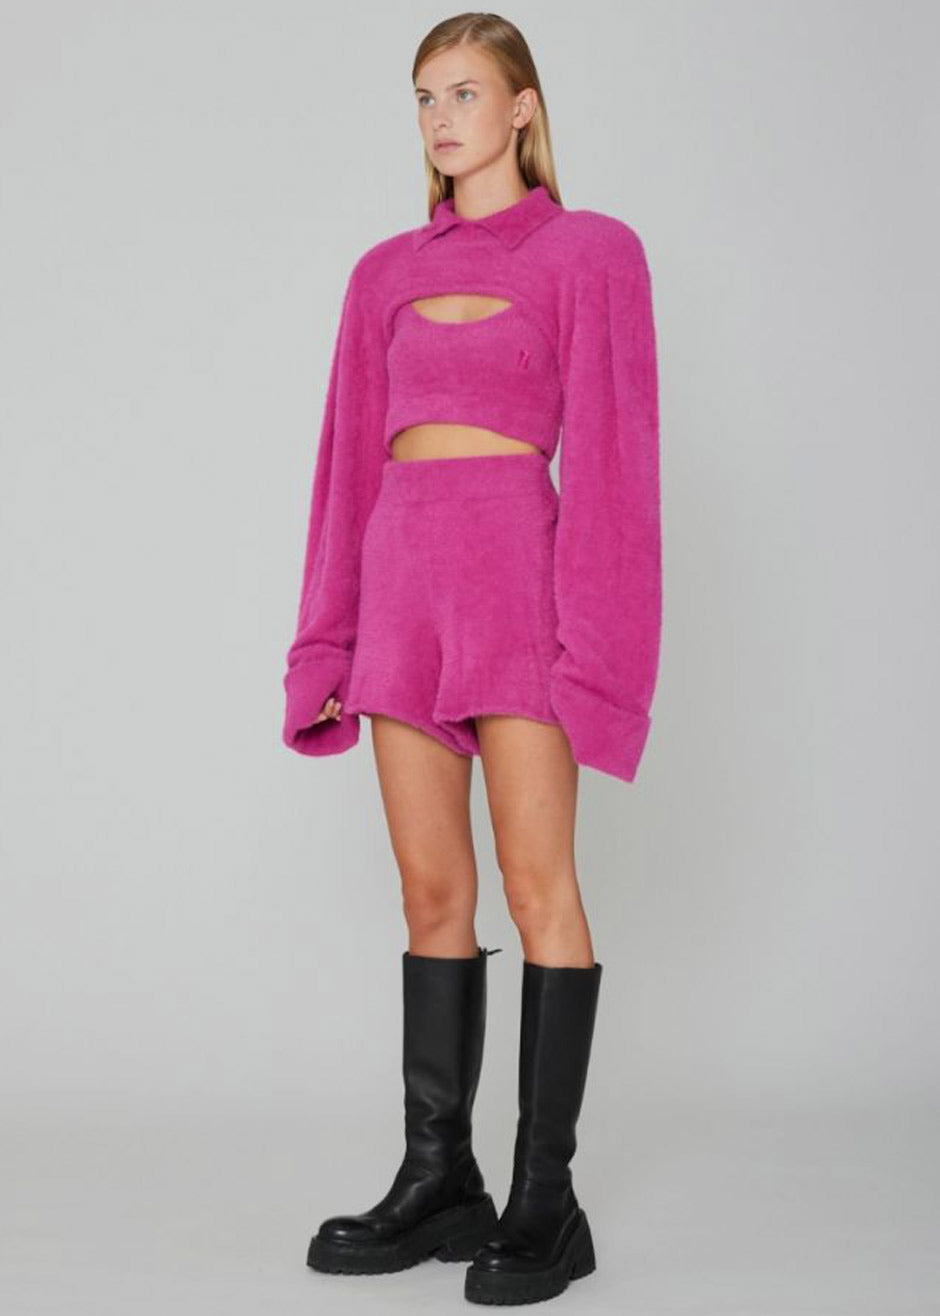 ROTATE Suzi Knit Shorts - Very Berry Pink